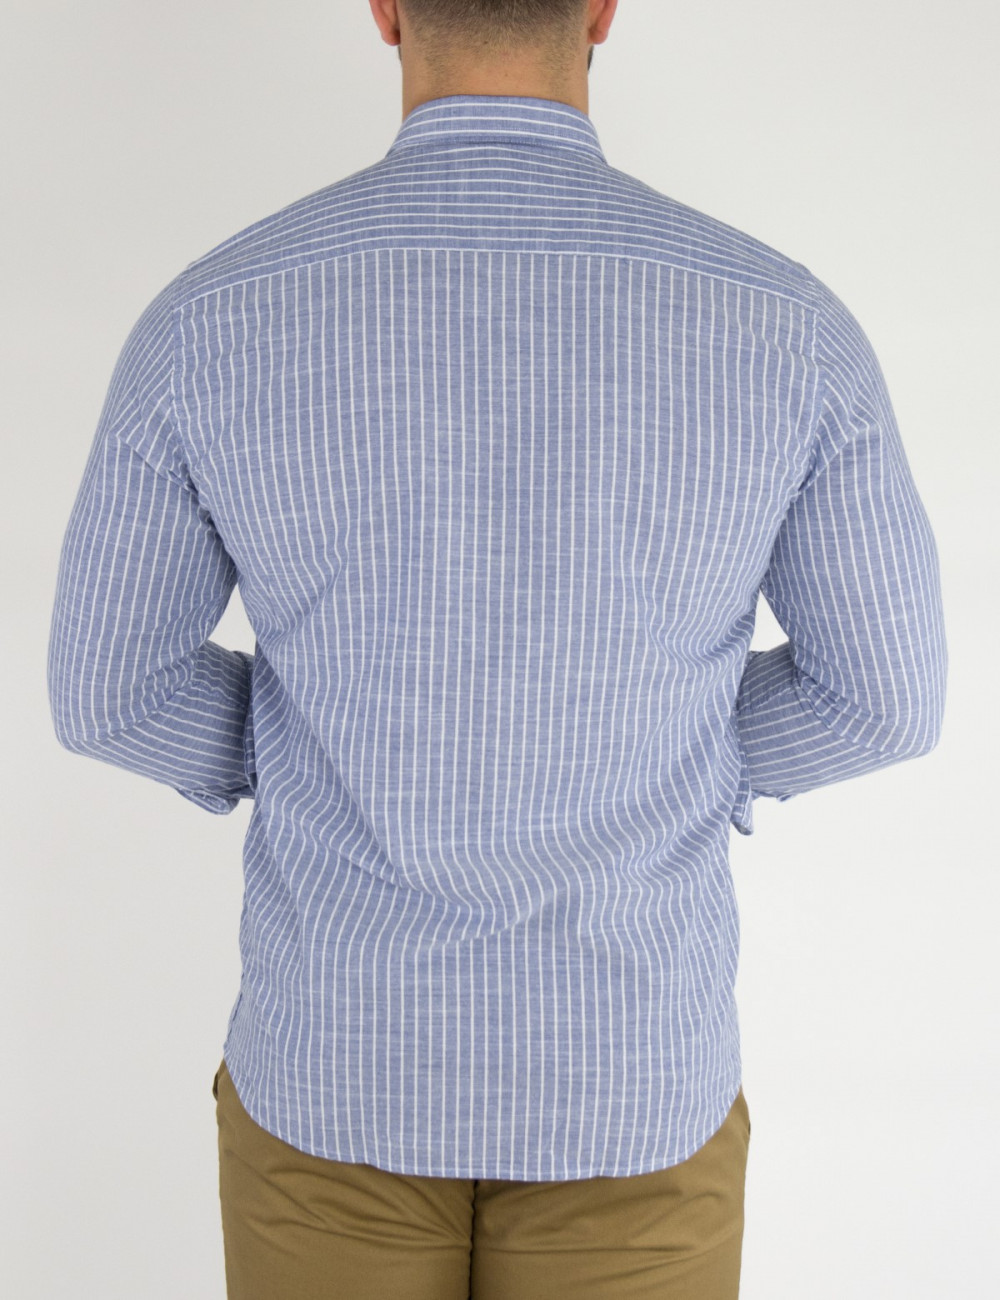 Ανδρικό βαμβακερό μπλε ριγέ πουκάμισο SL152W